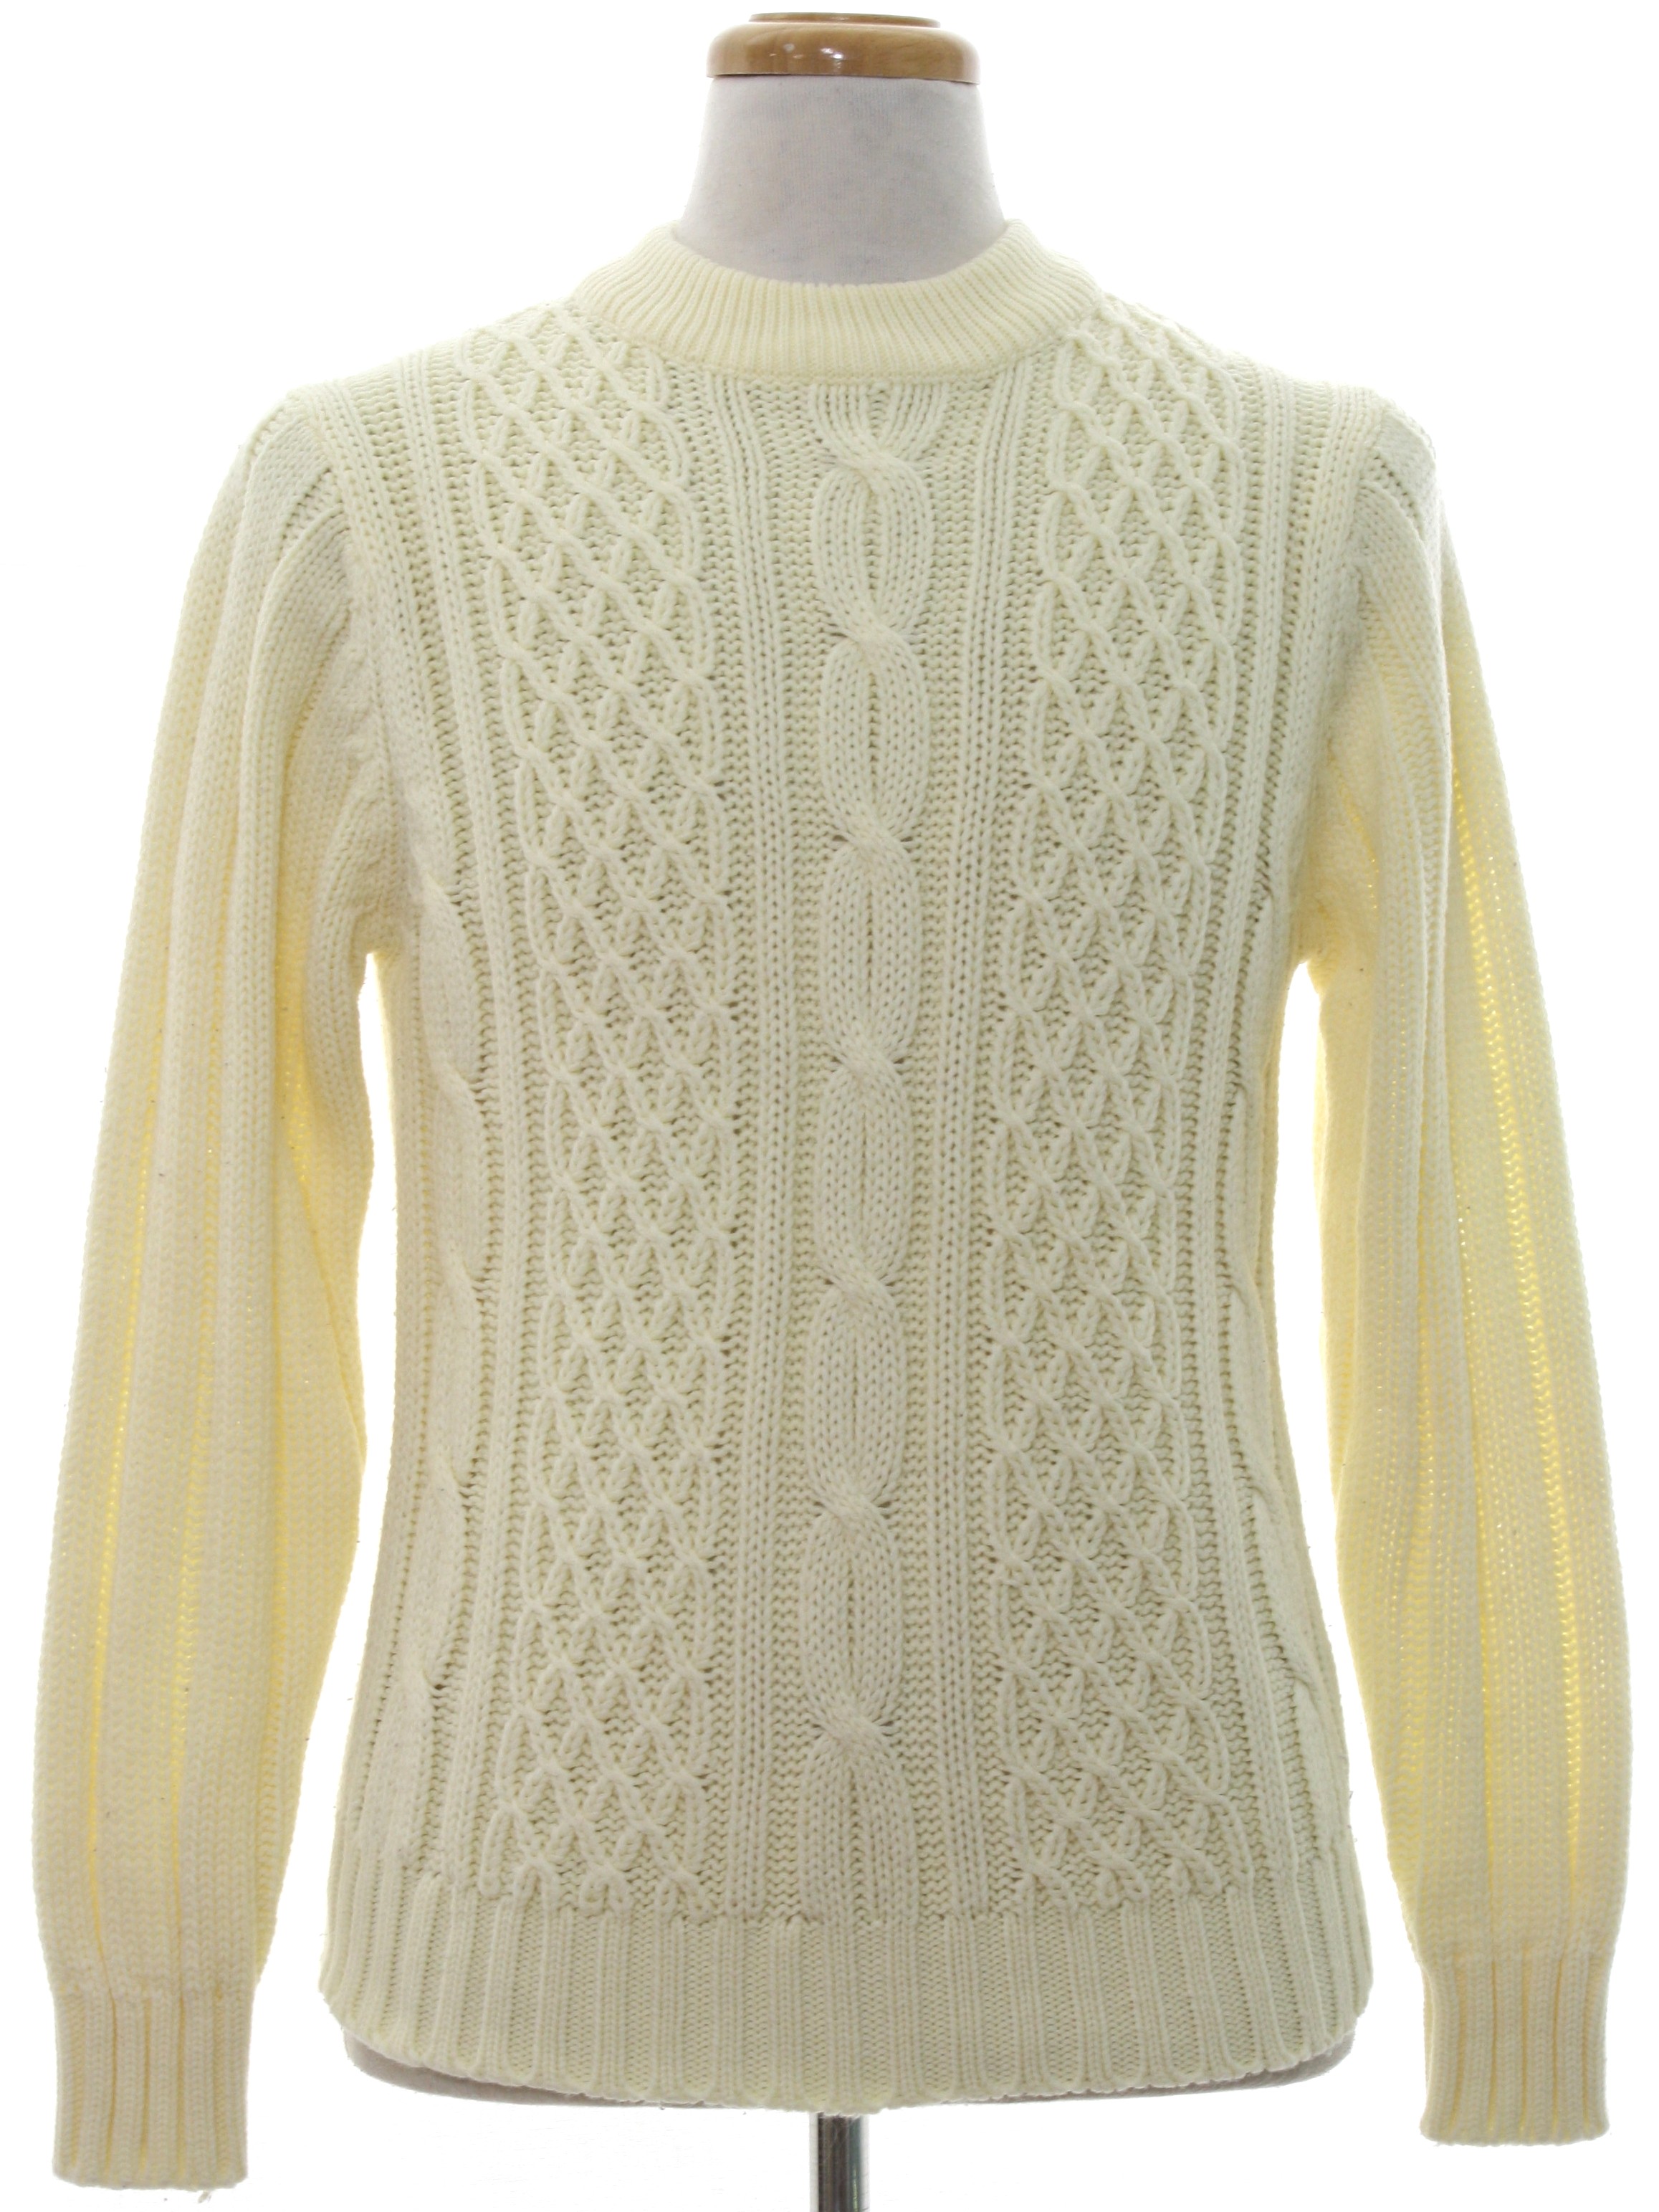 Supreme 70's Vintage Sweater: 70s -Supreme- Mens winter white cable ...